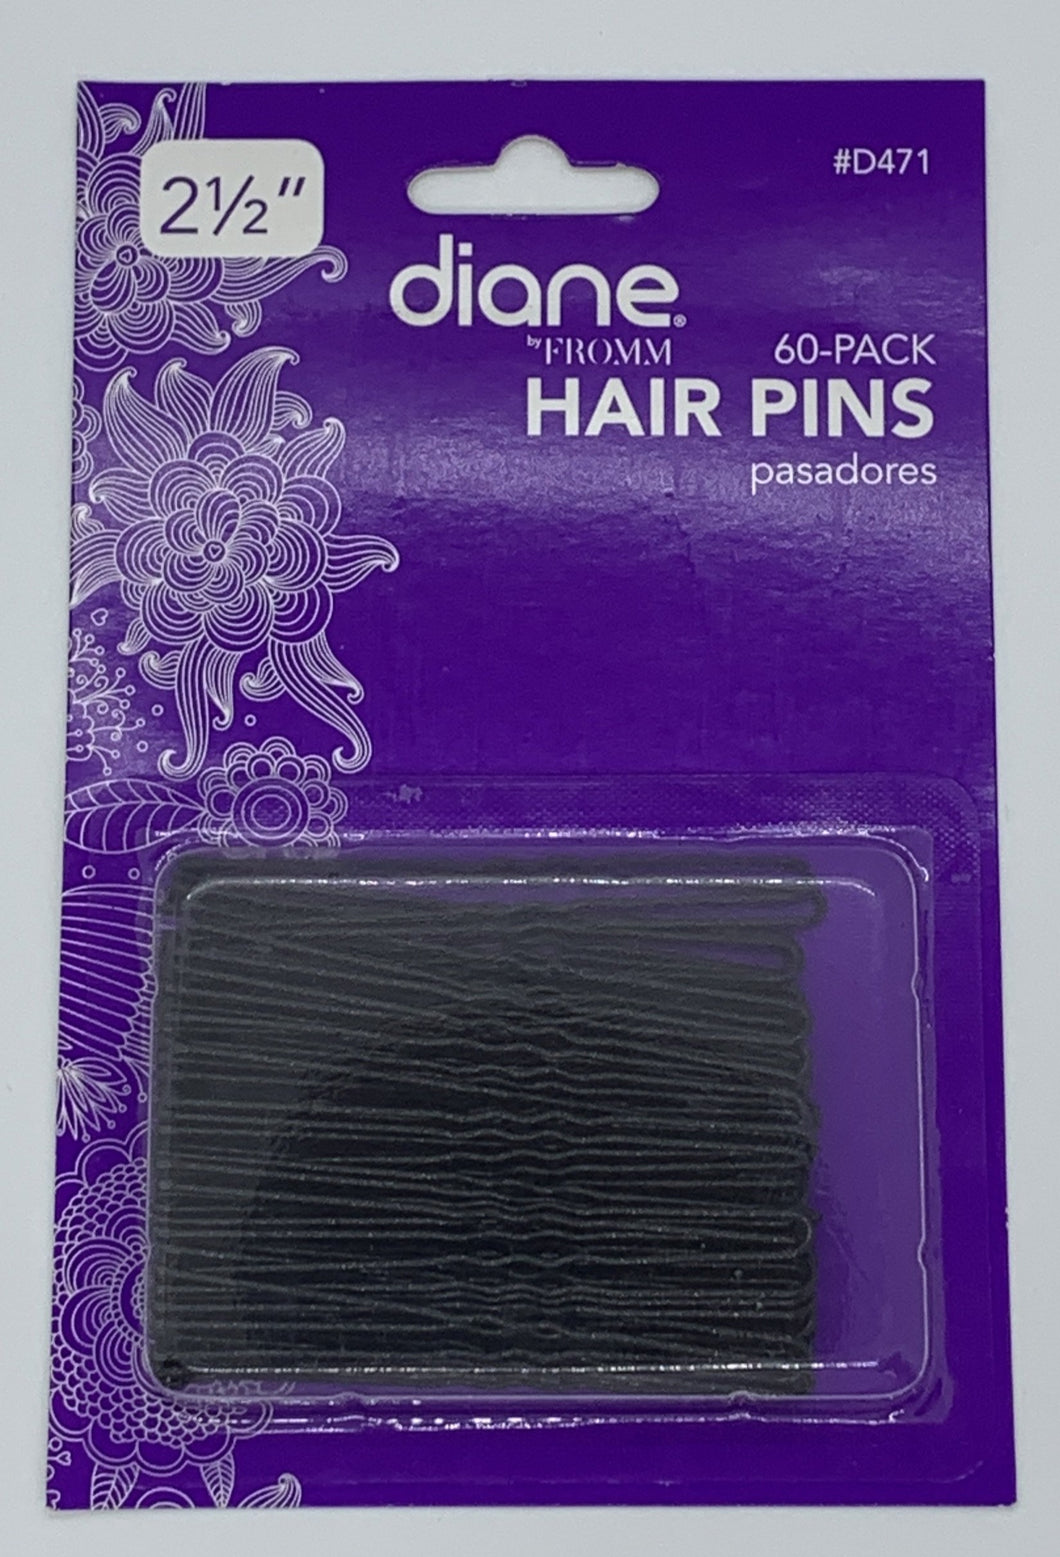 Diane Hair Pins 60 Pack 2 1/2”